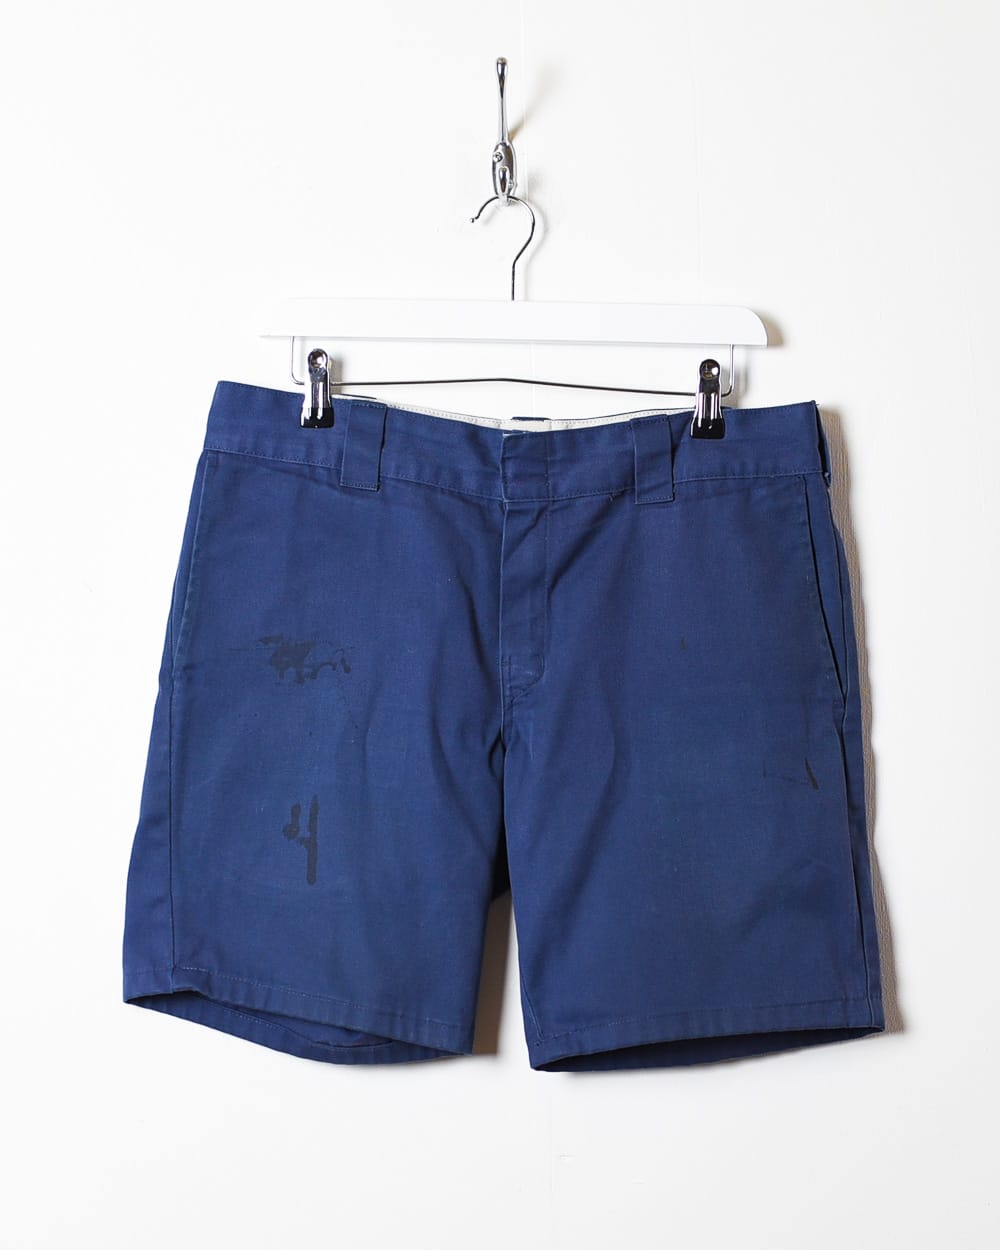 Navy Dickies Chino Shorts - W34 